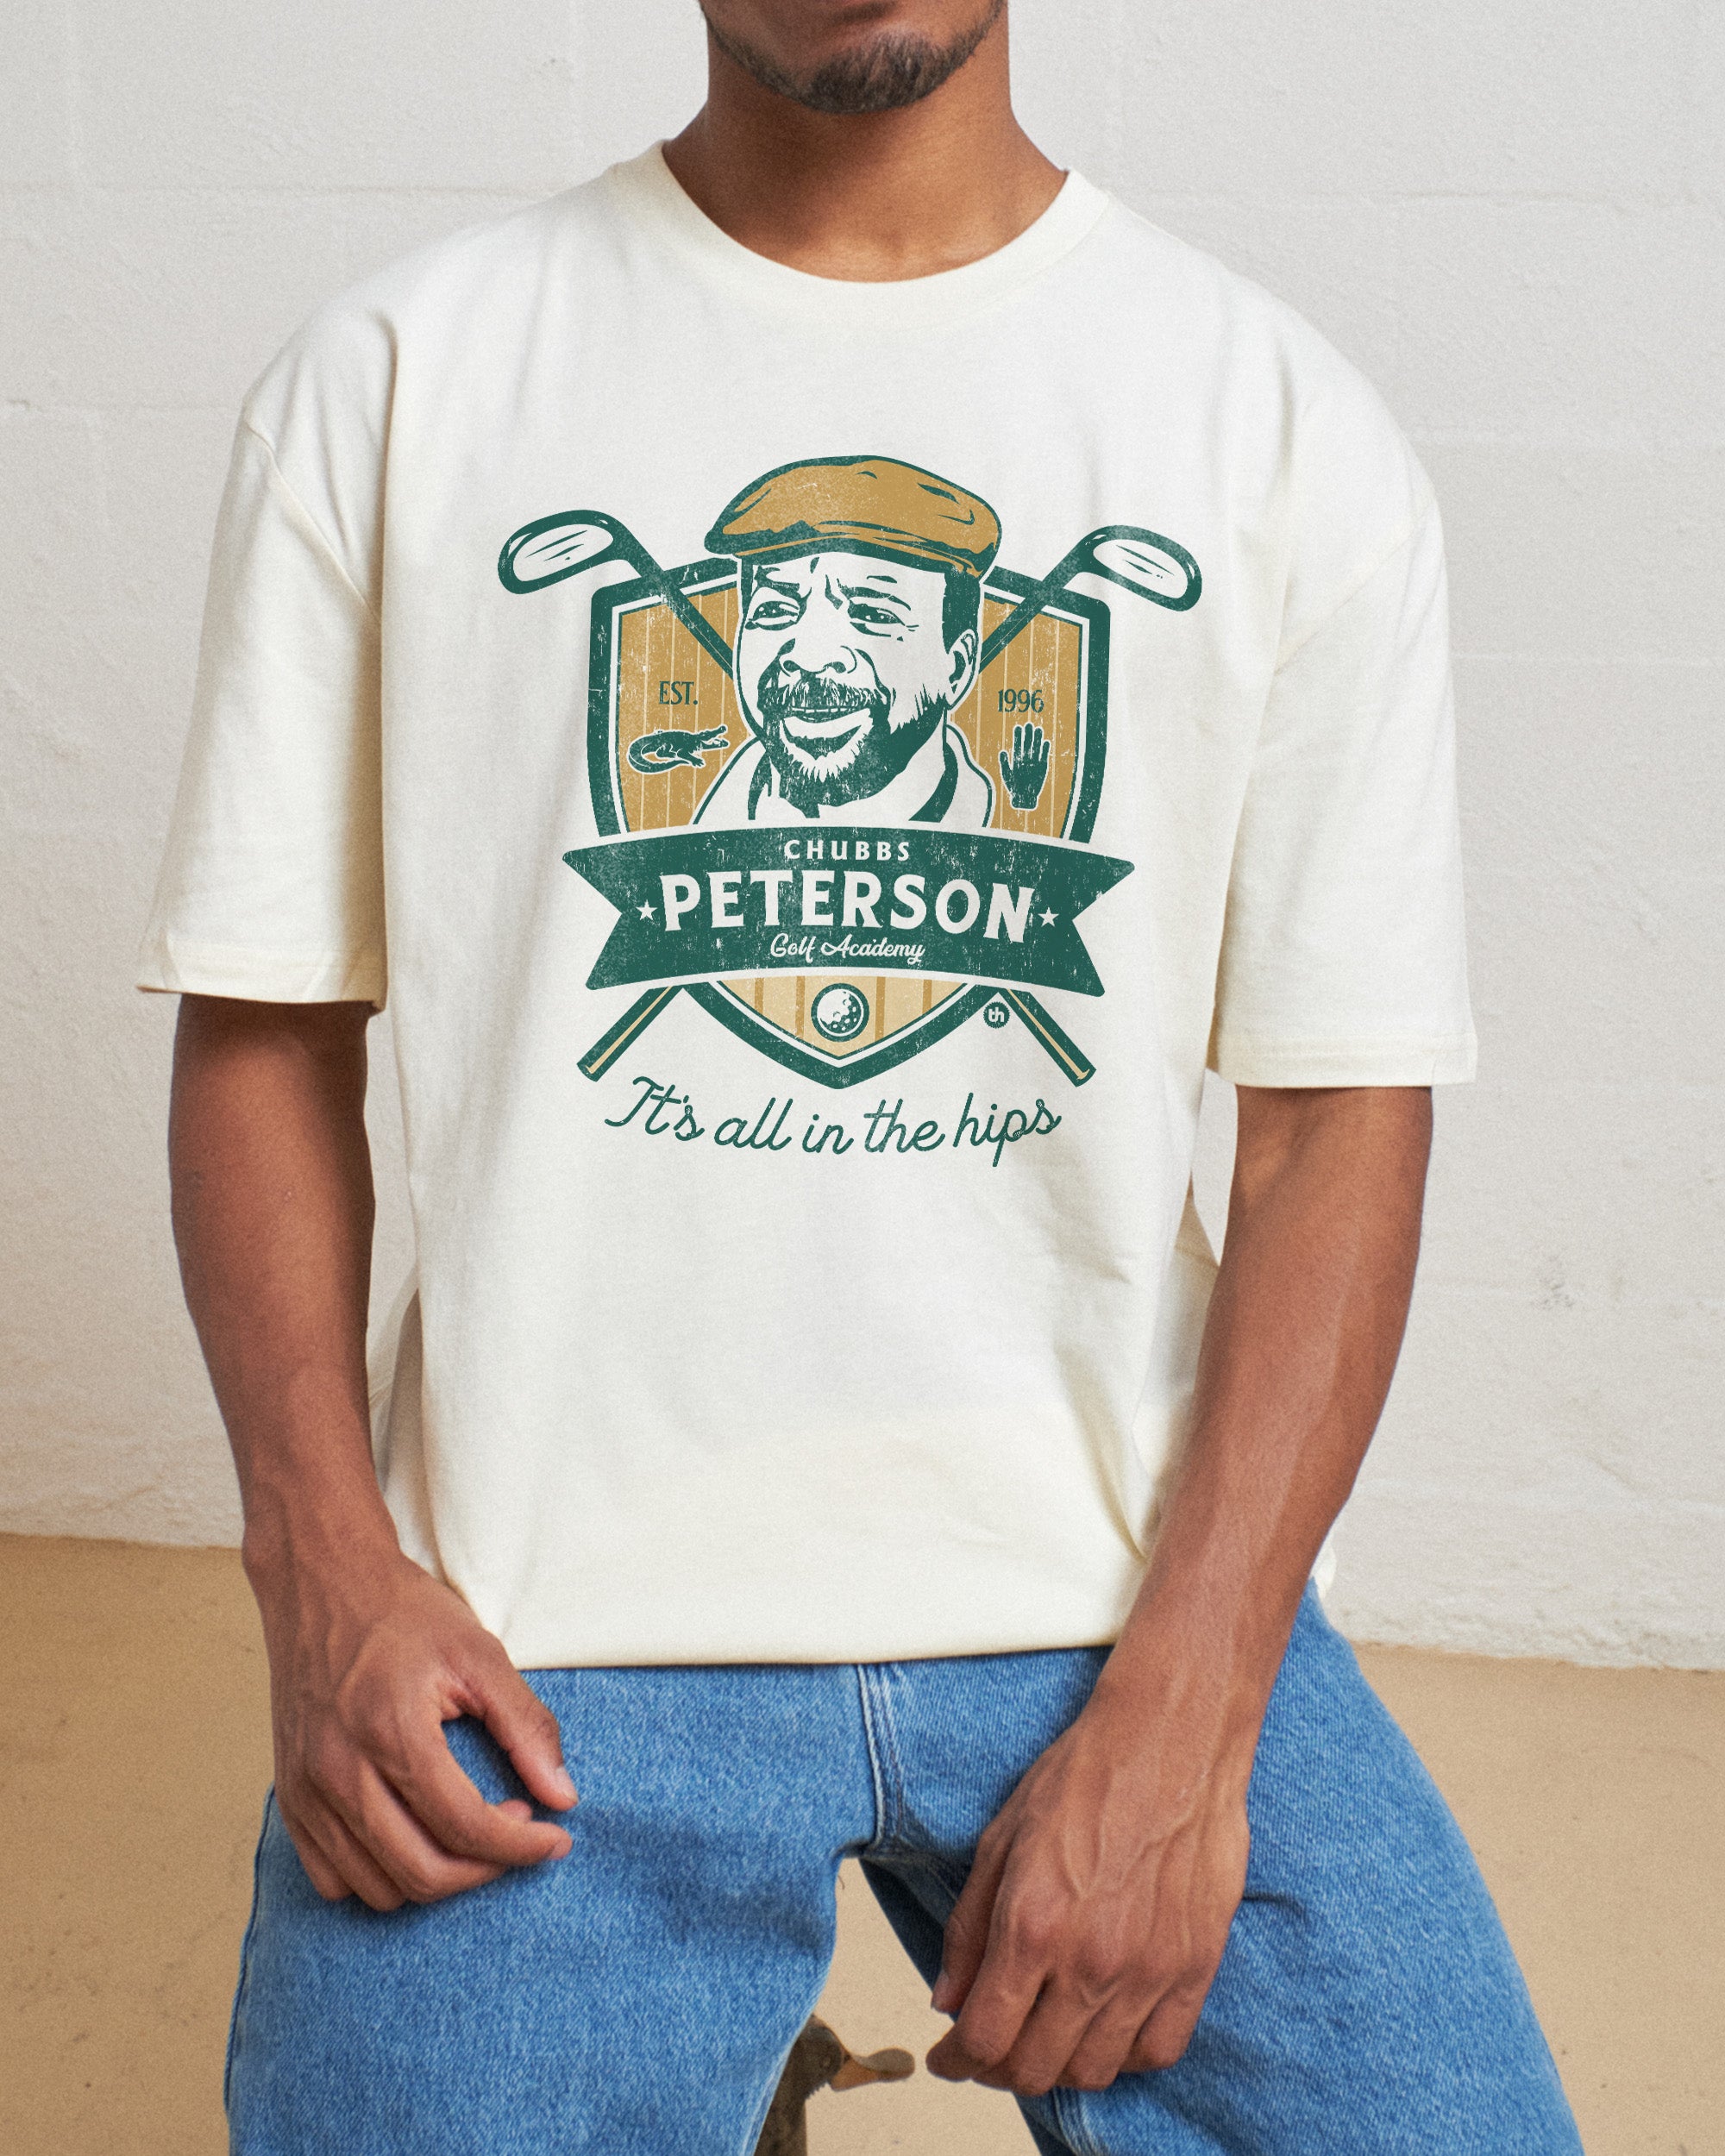 Chubbs Peterson Golf Academy T-Shirt Australia Online